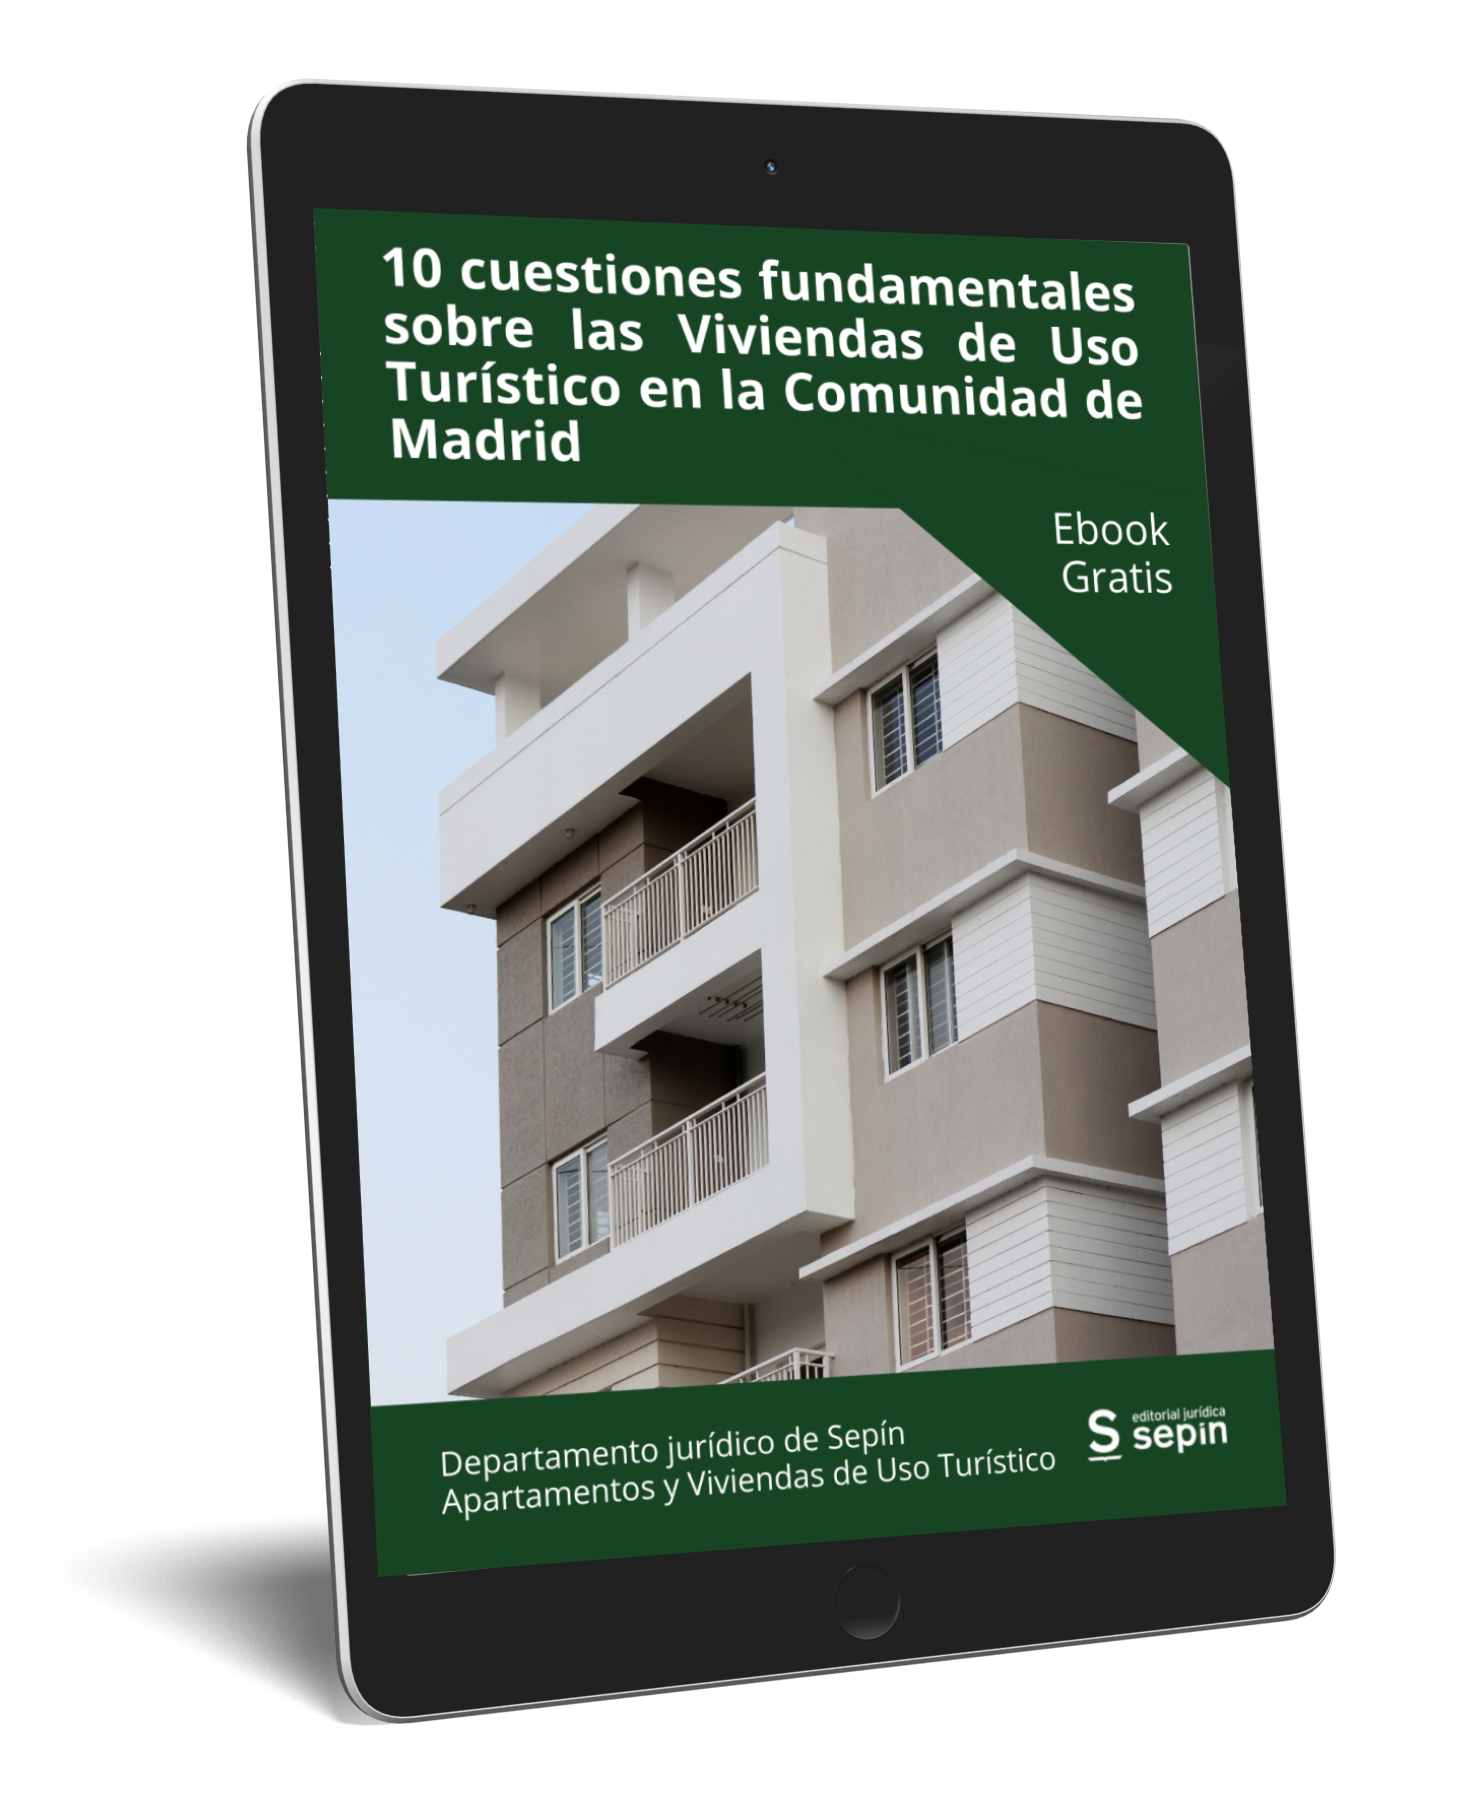 10 cuestiones fundamentales sobre las viviendas de uso turístico en Madrid